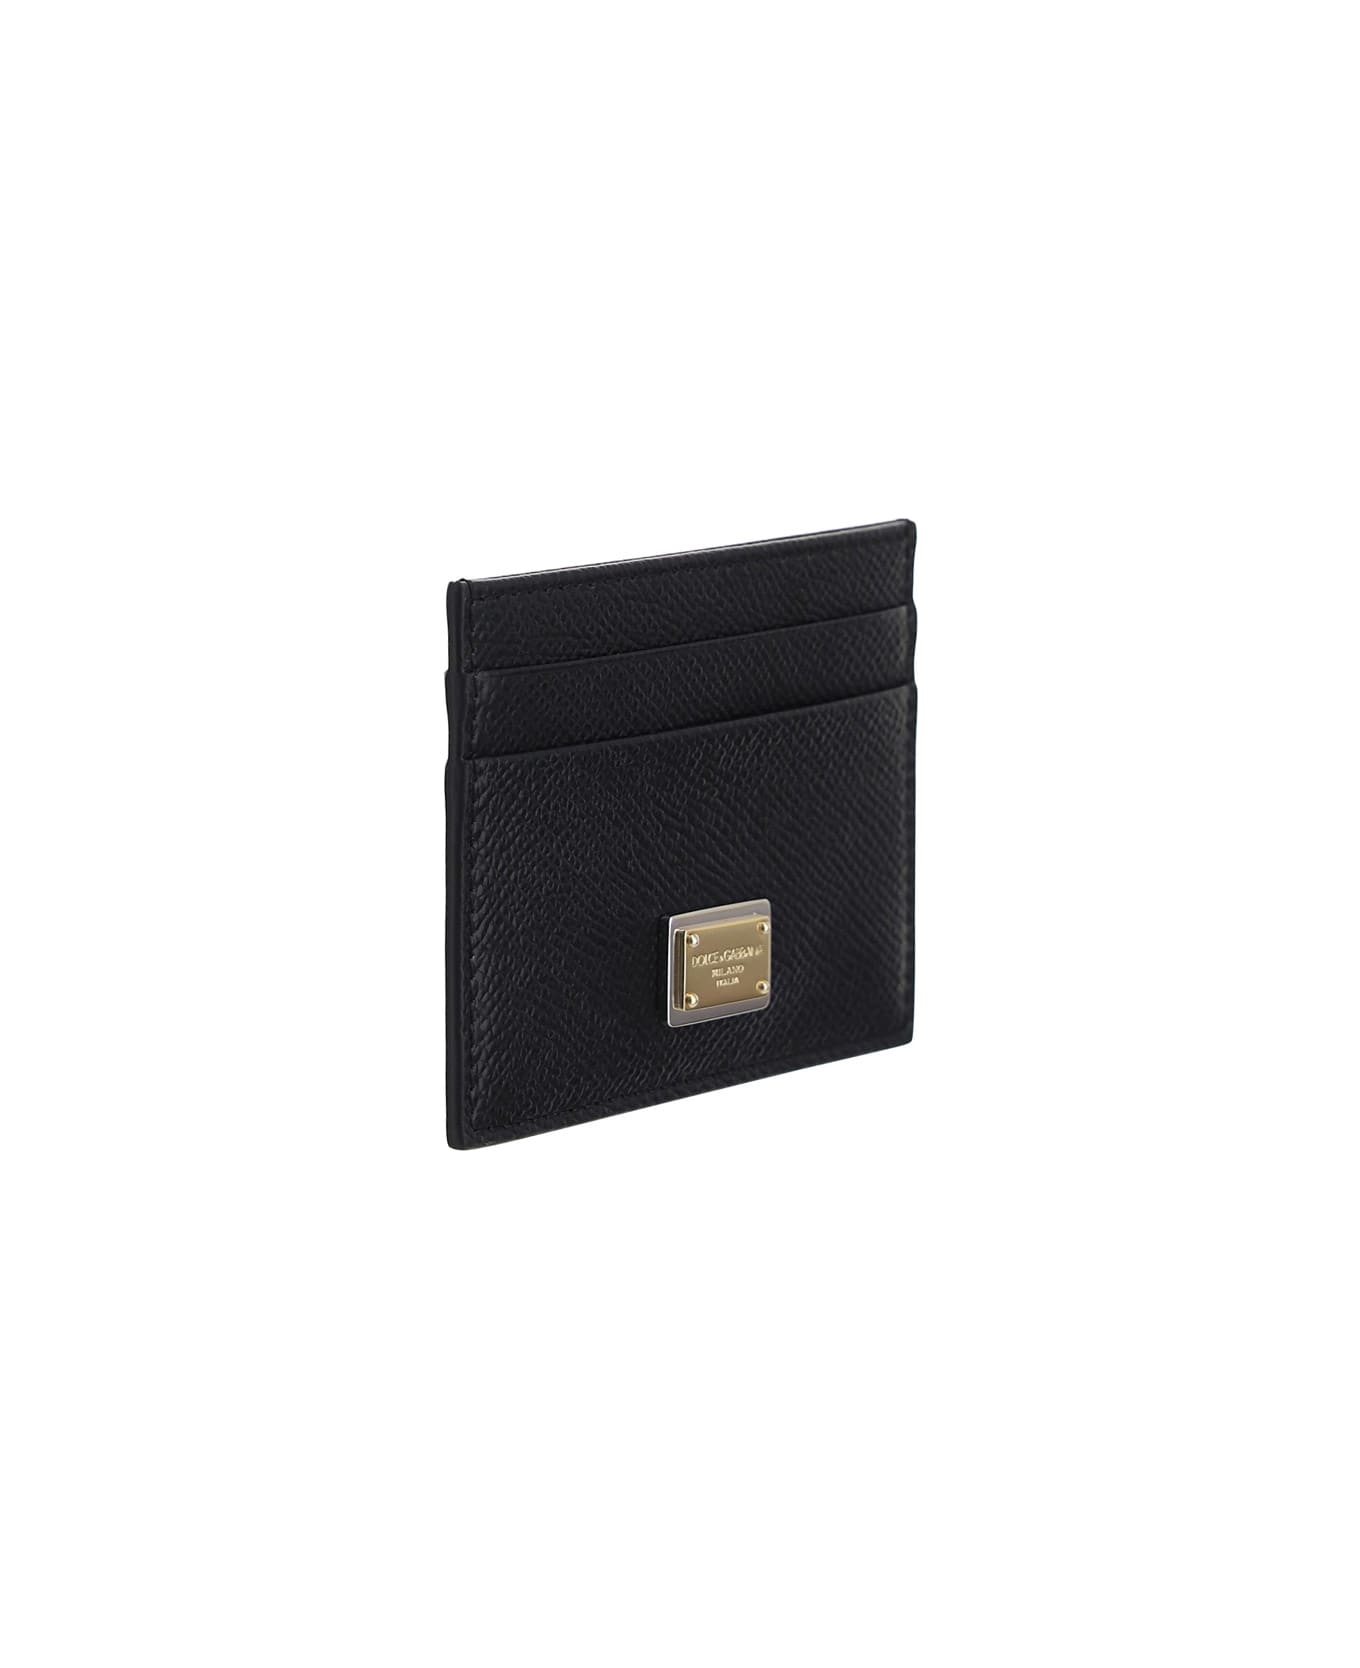 Dolce & Gabbana Card Holder - Nero 財布